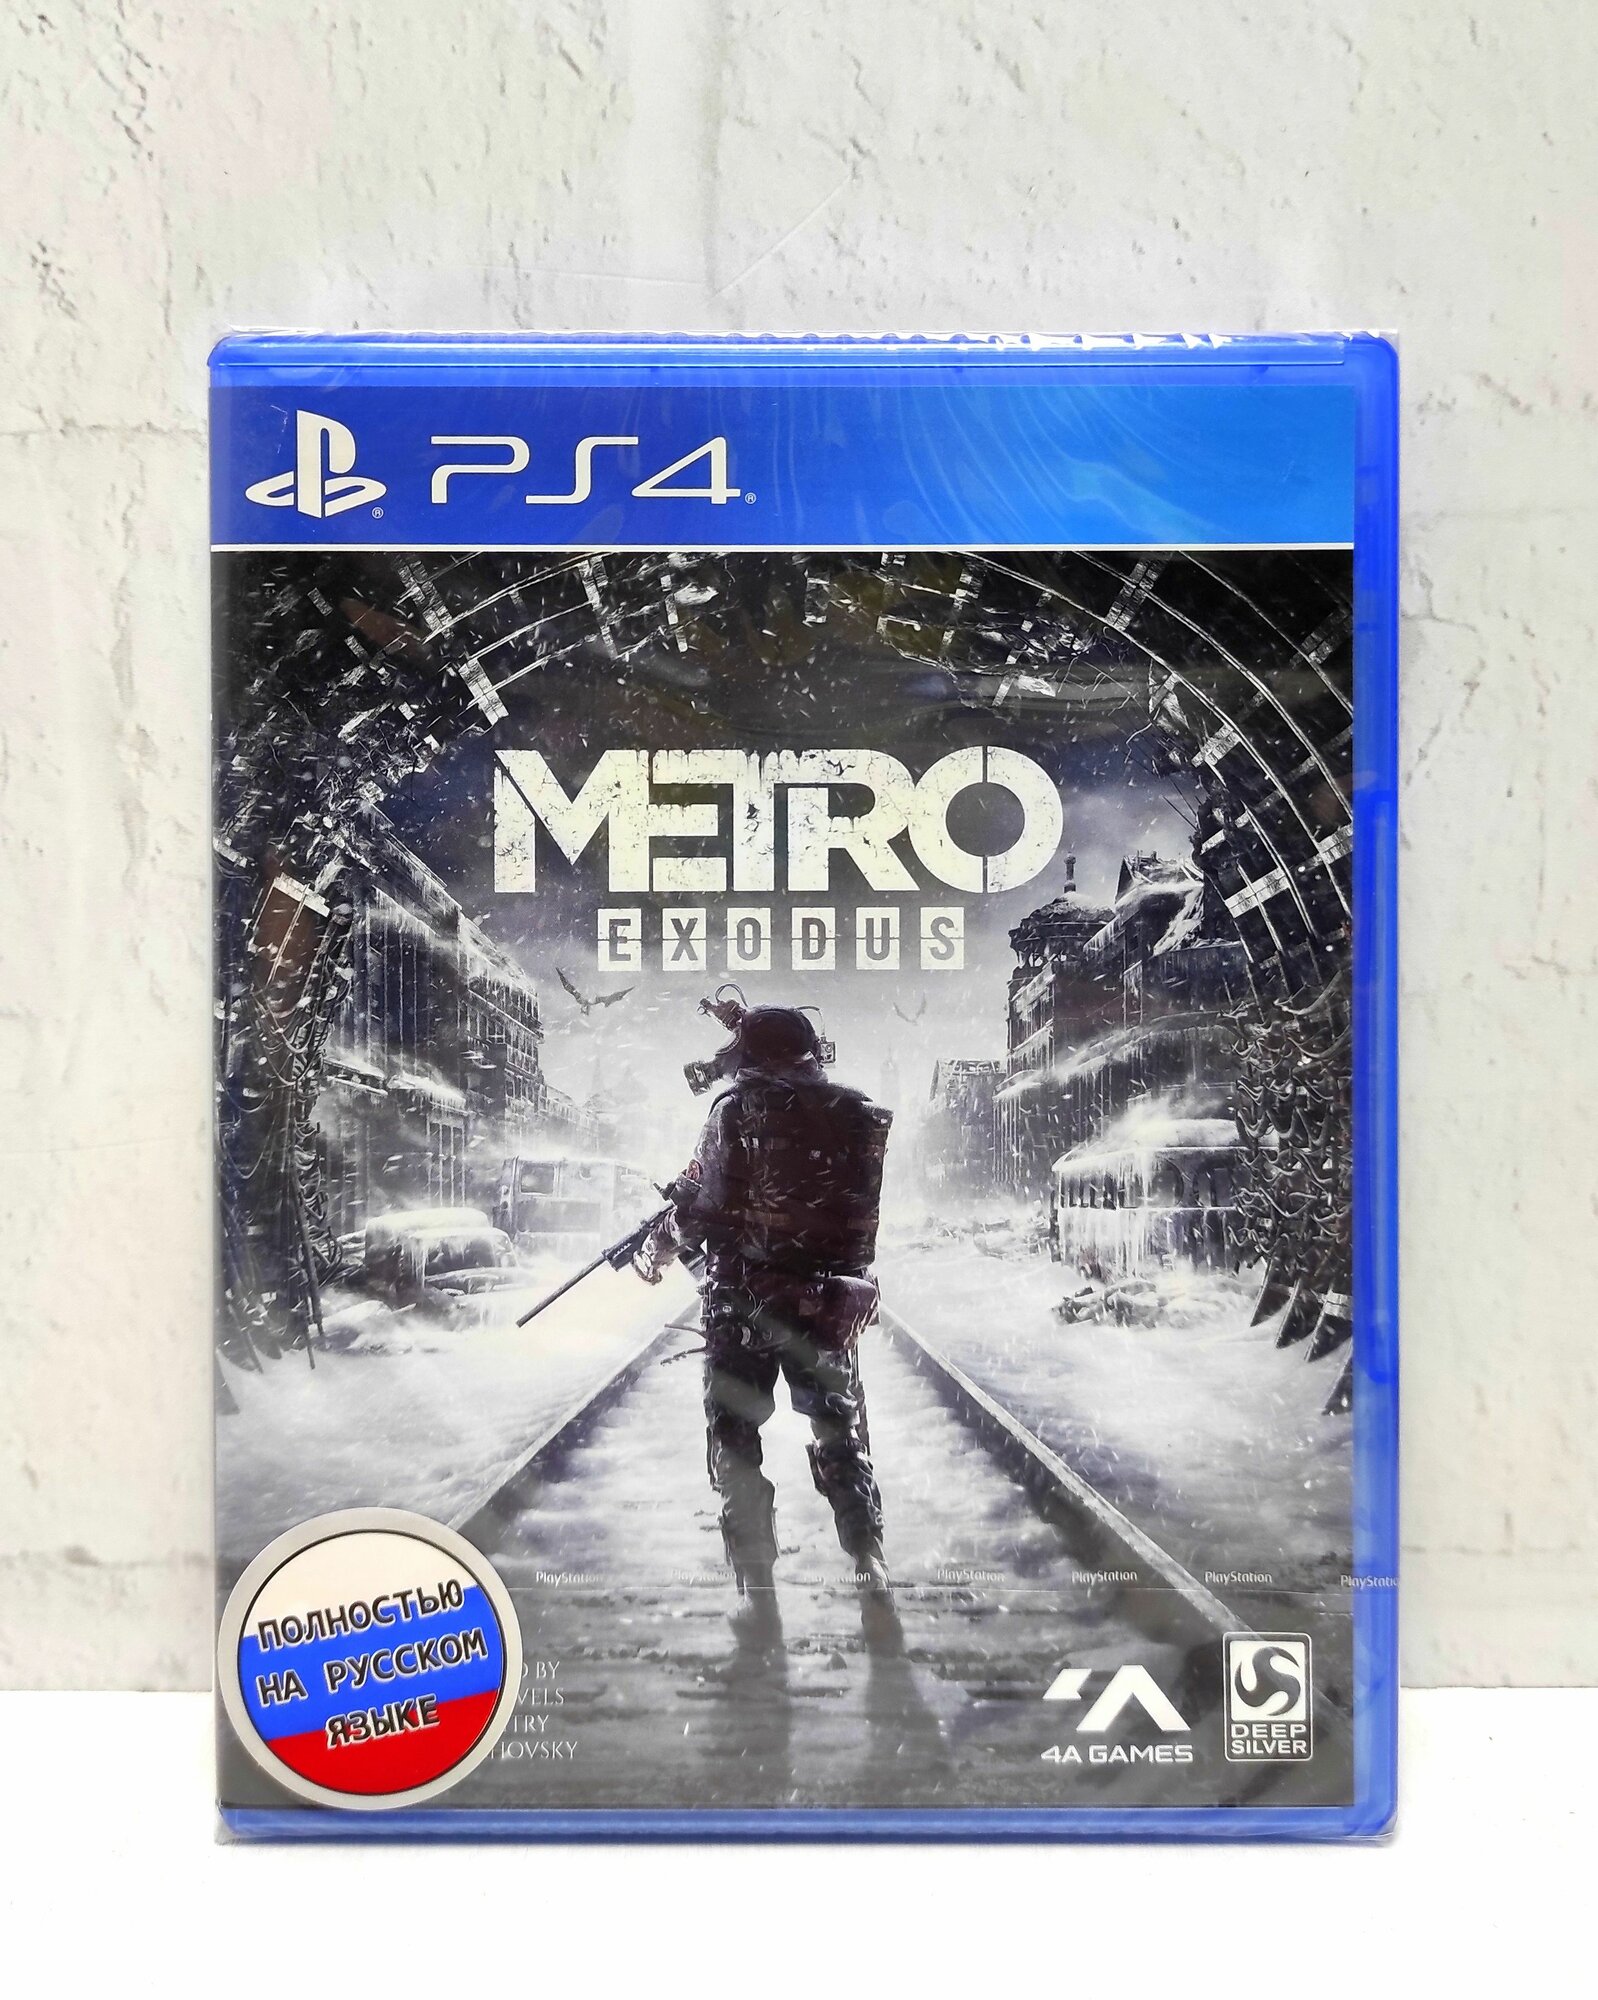 Метро Исход Metro Exodus Полностью на русском языке Видеоигра на диске PS4 / PS5